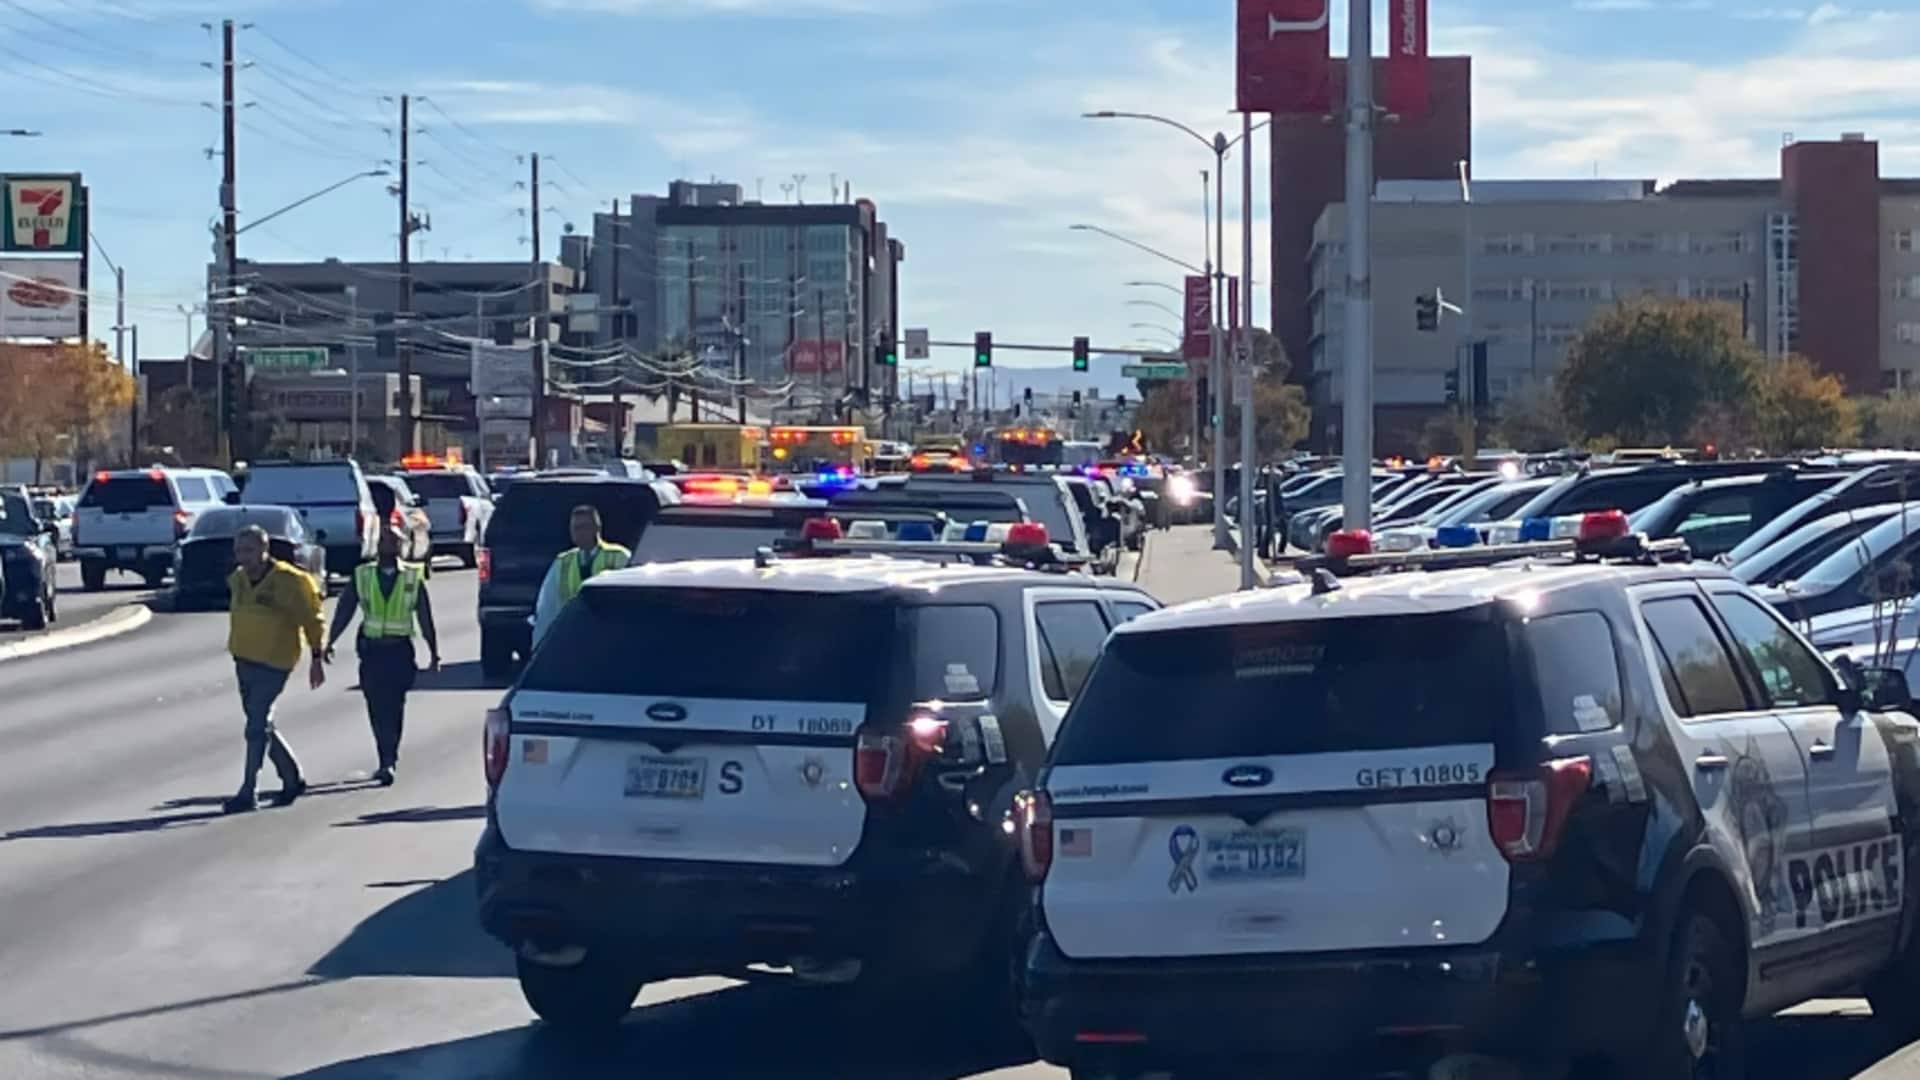 अमेरिका: लास वेगास के नेवादा विश्वविद्यालय में गोलीबारी; 3 की मौत, हमलावर भी मृत मिला